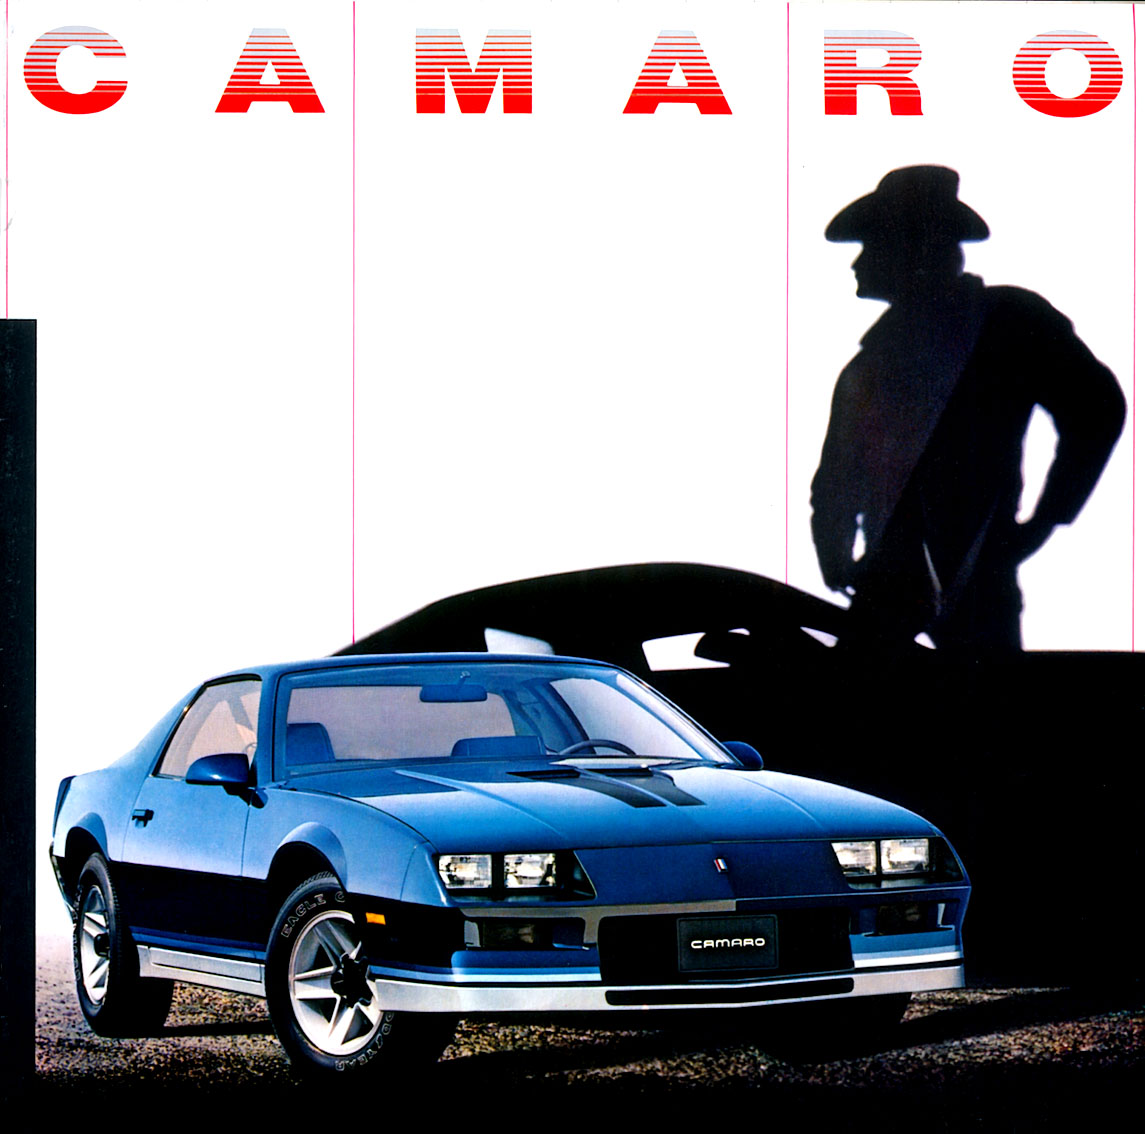 1982 Chevrolet Camaro Brochure